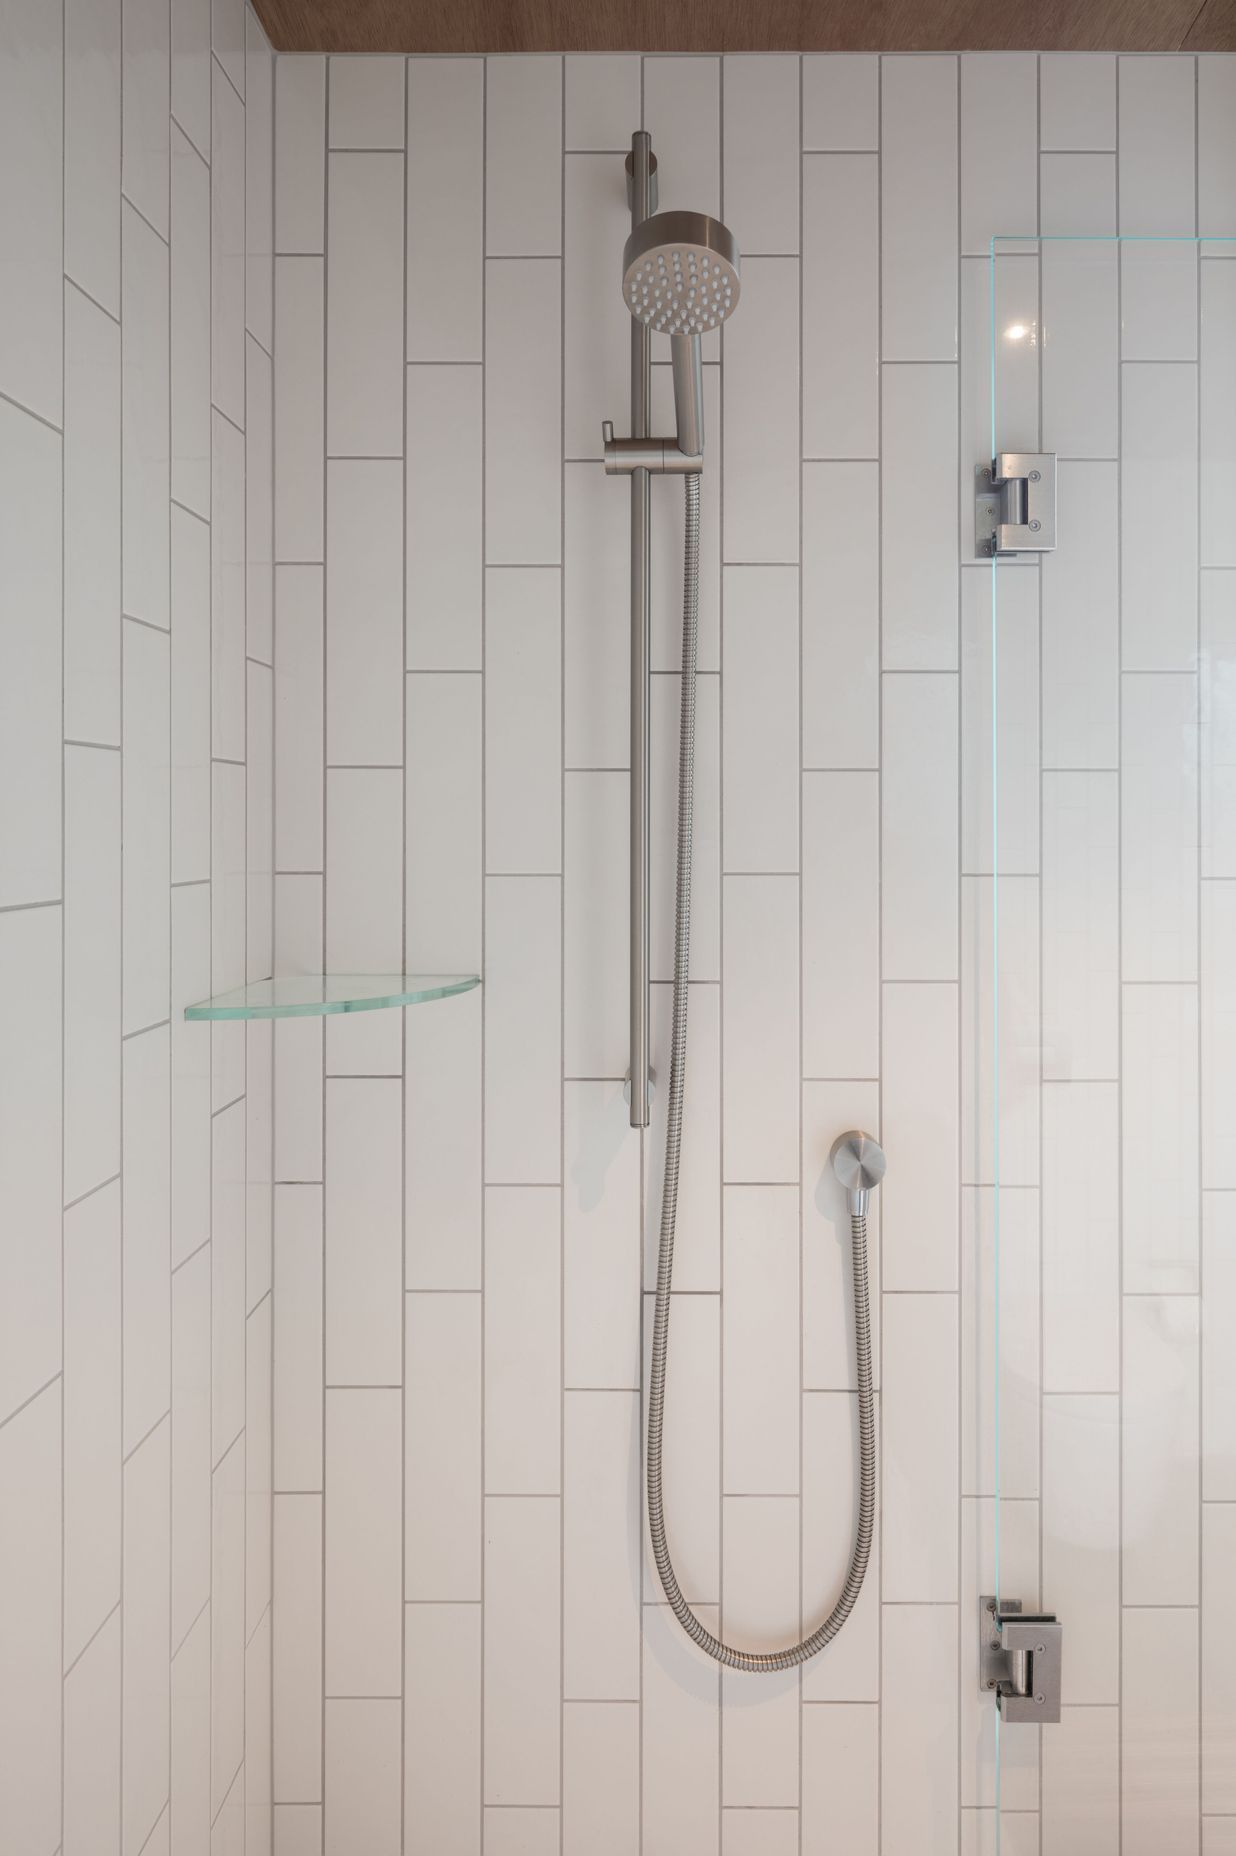 Main Bathroom - 21 Shower Slide &amp; Head w/ 207 Outlet